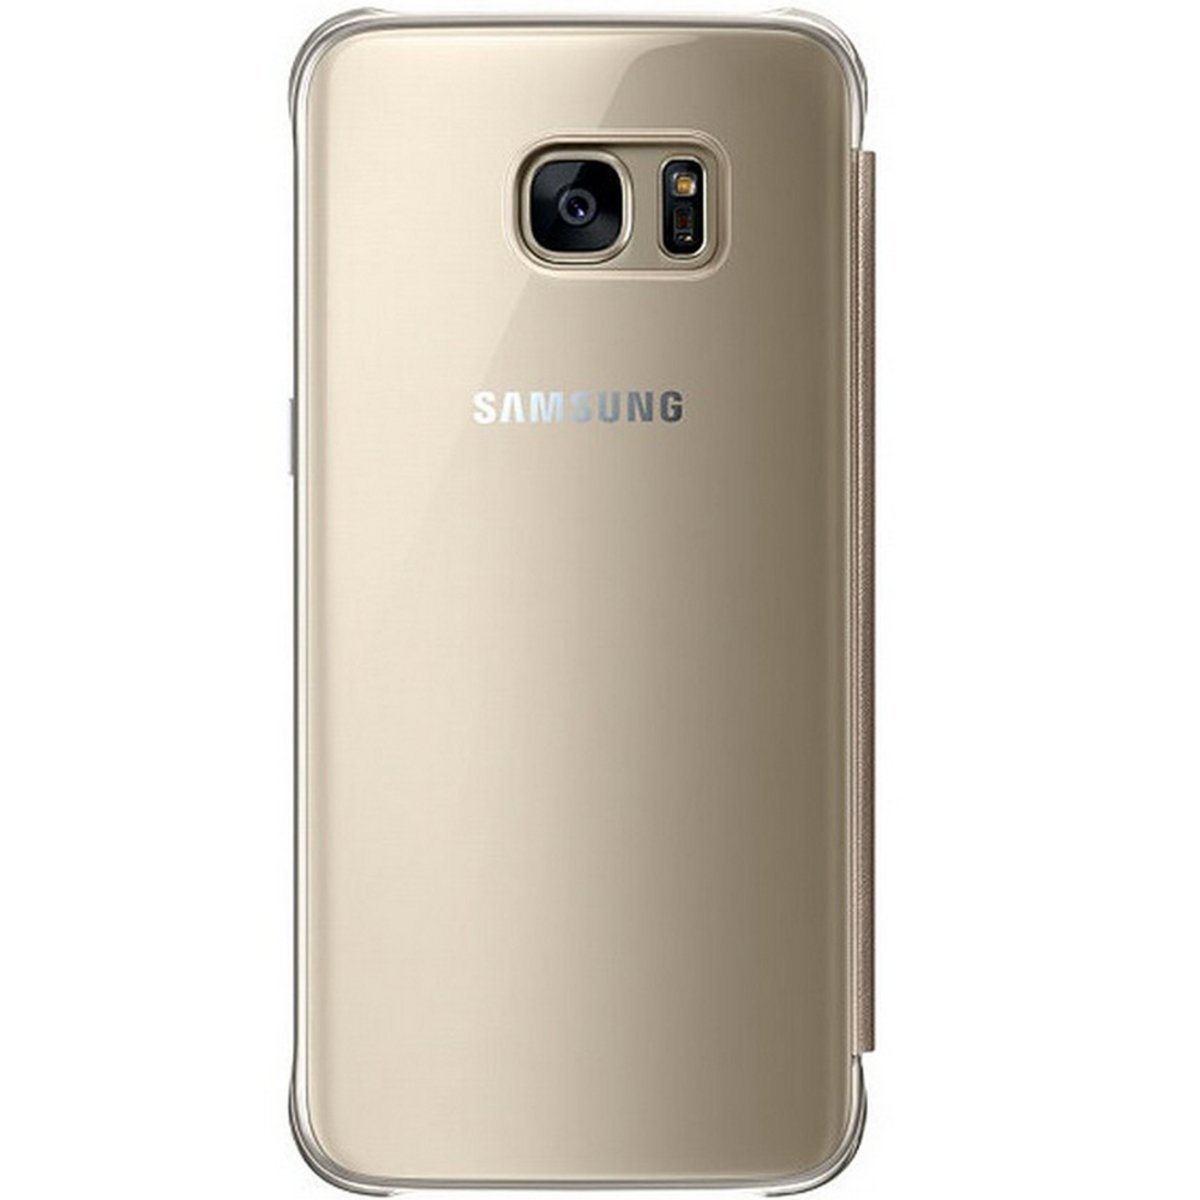 Samsung Galaxy S7 Edge Clear View Case ZG935CF Gold